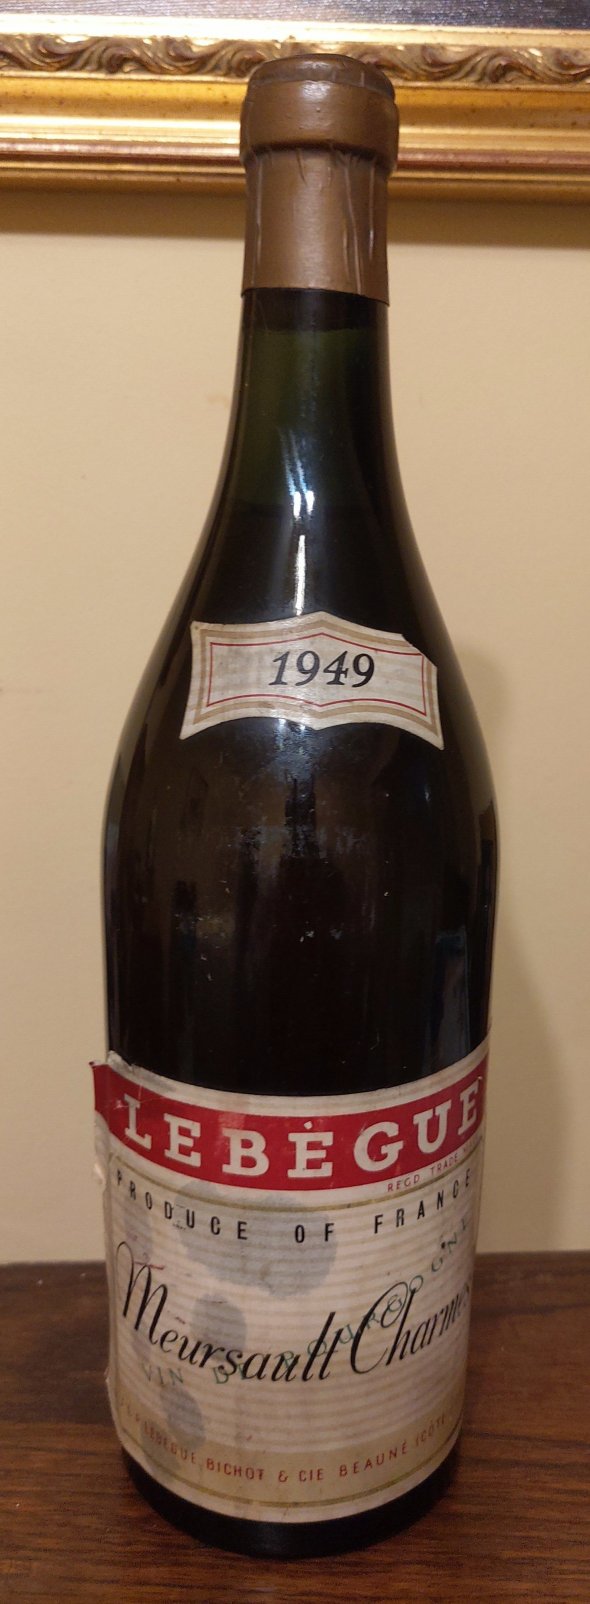 1949 Lebegue Meursault Chames - Beaune